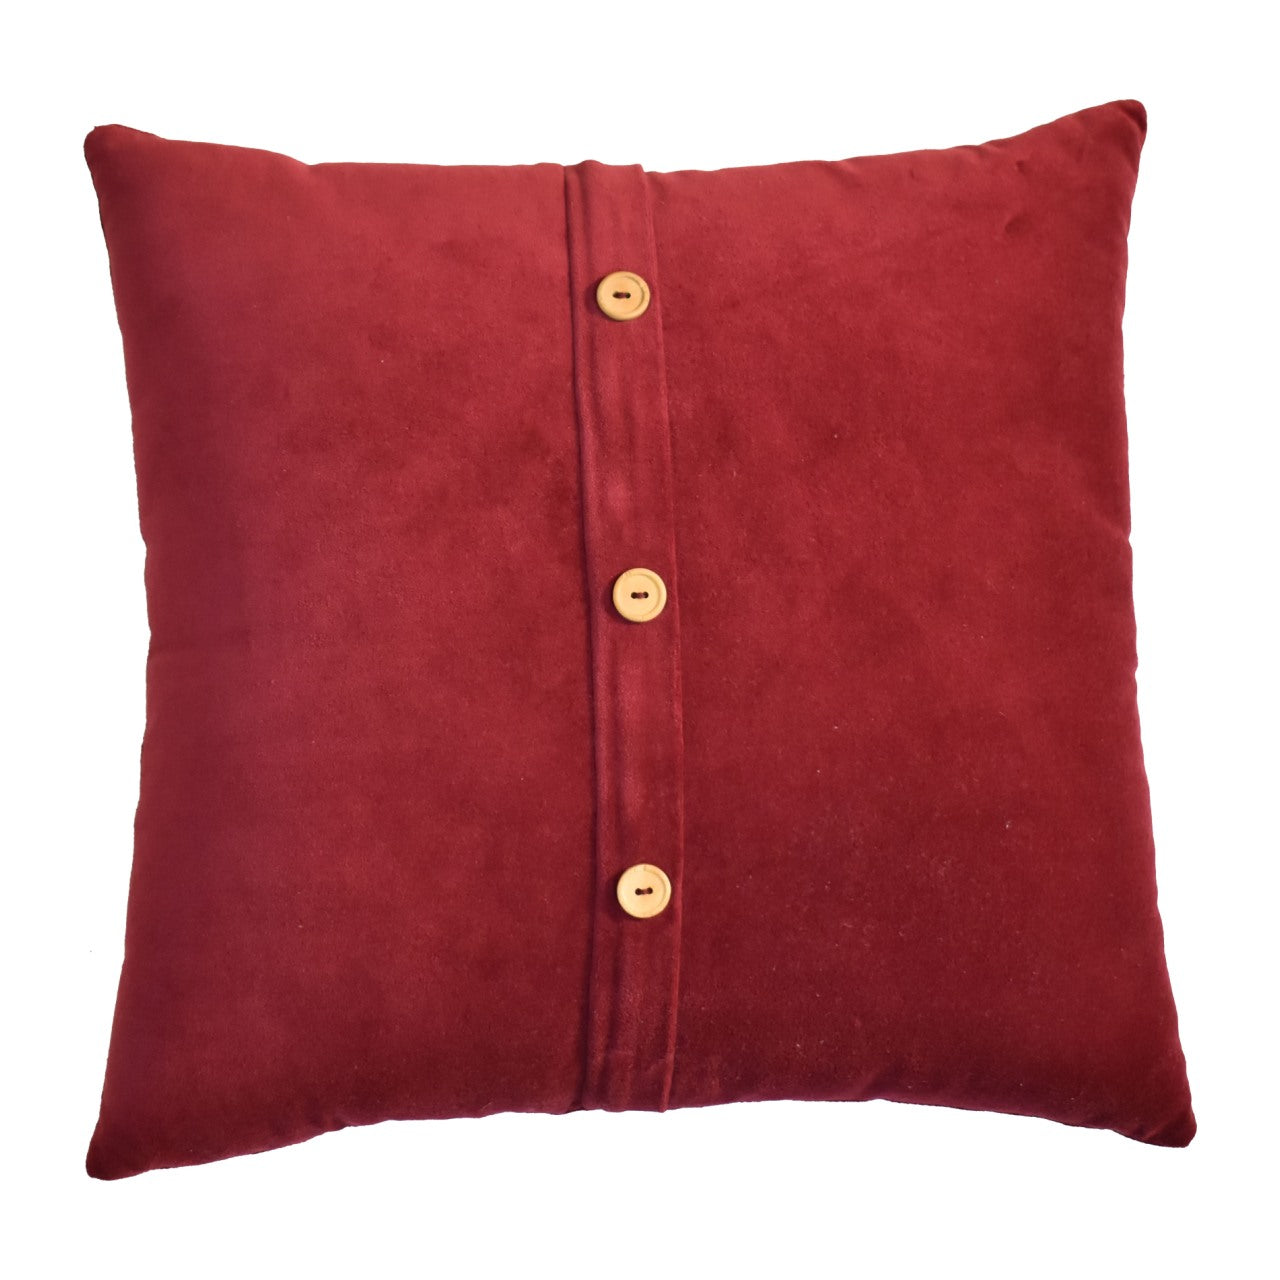 Quinn Cushion Set of 2 - Red